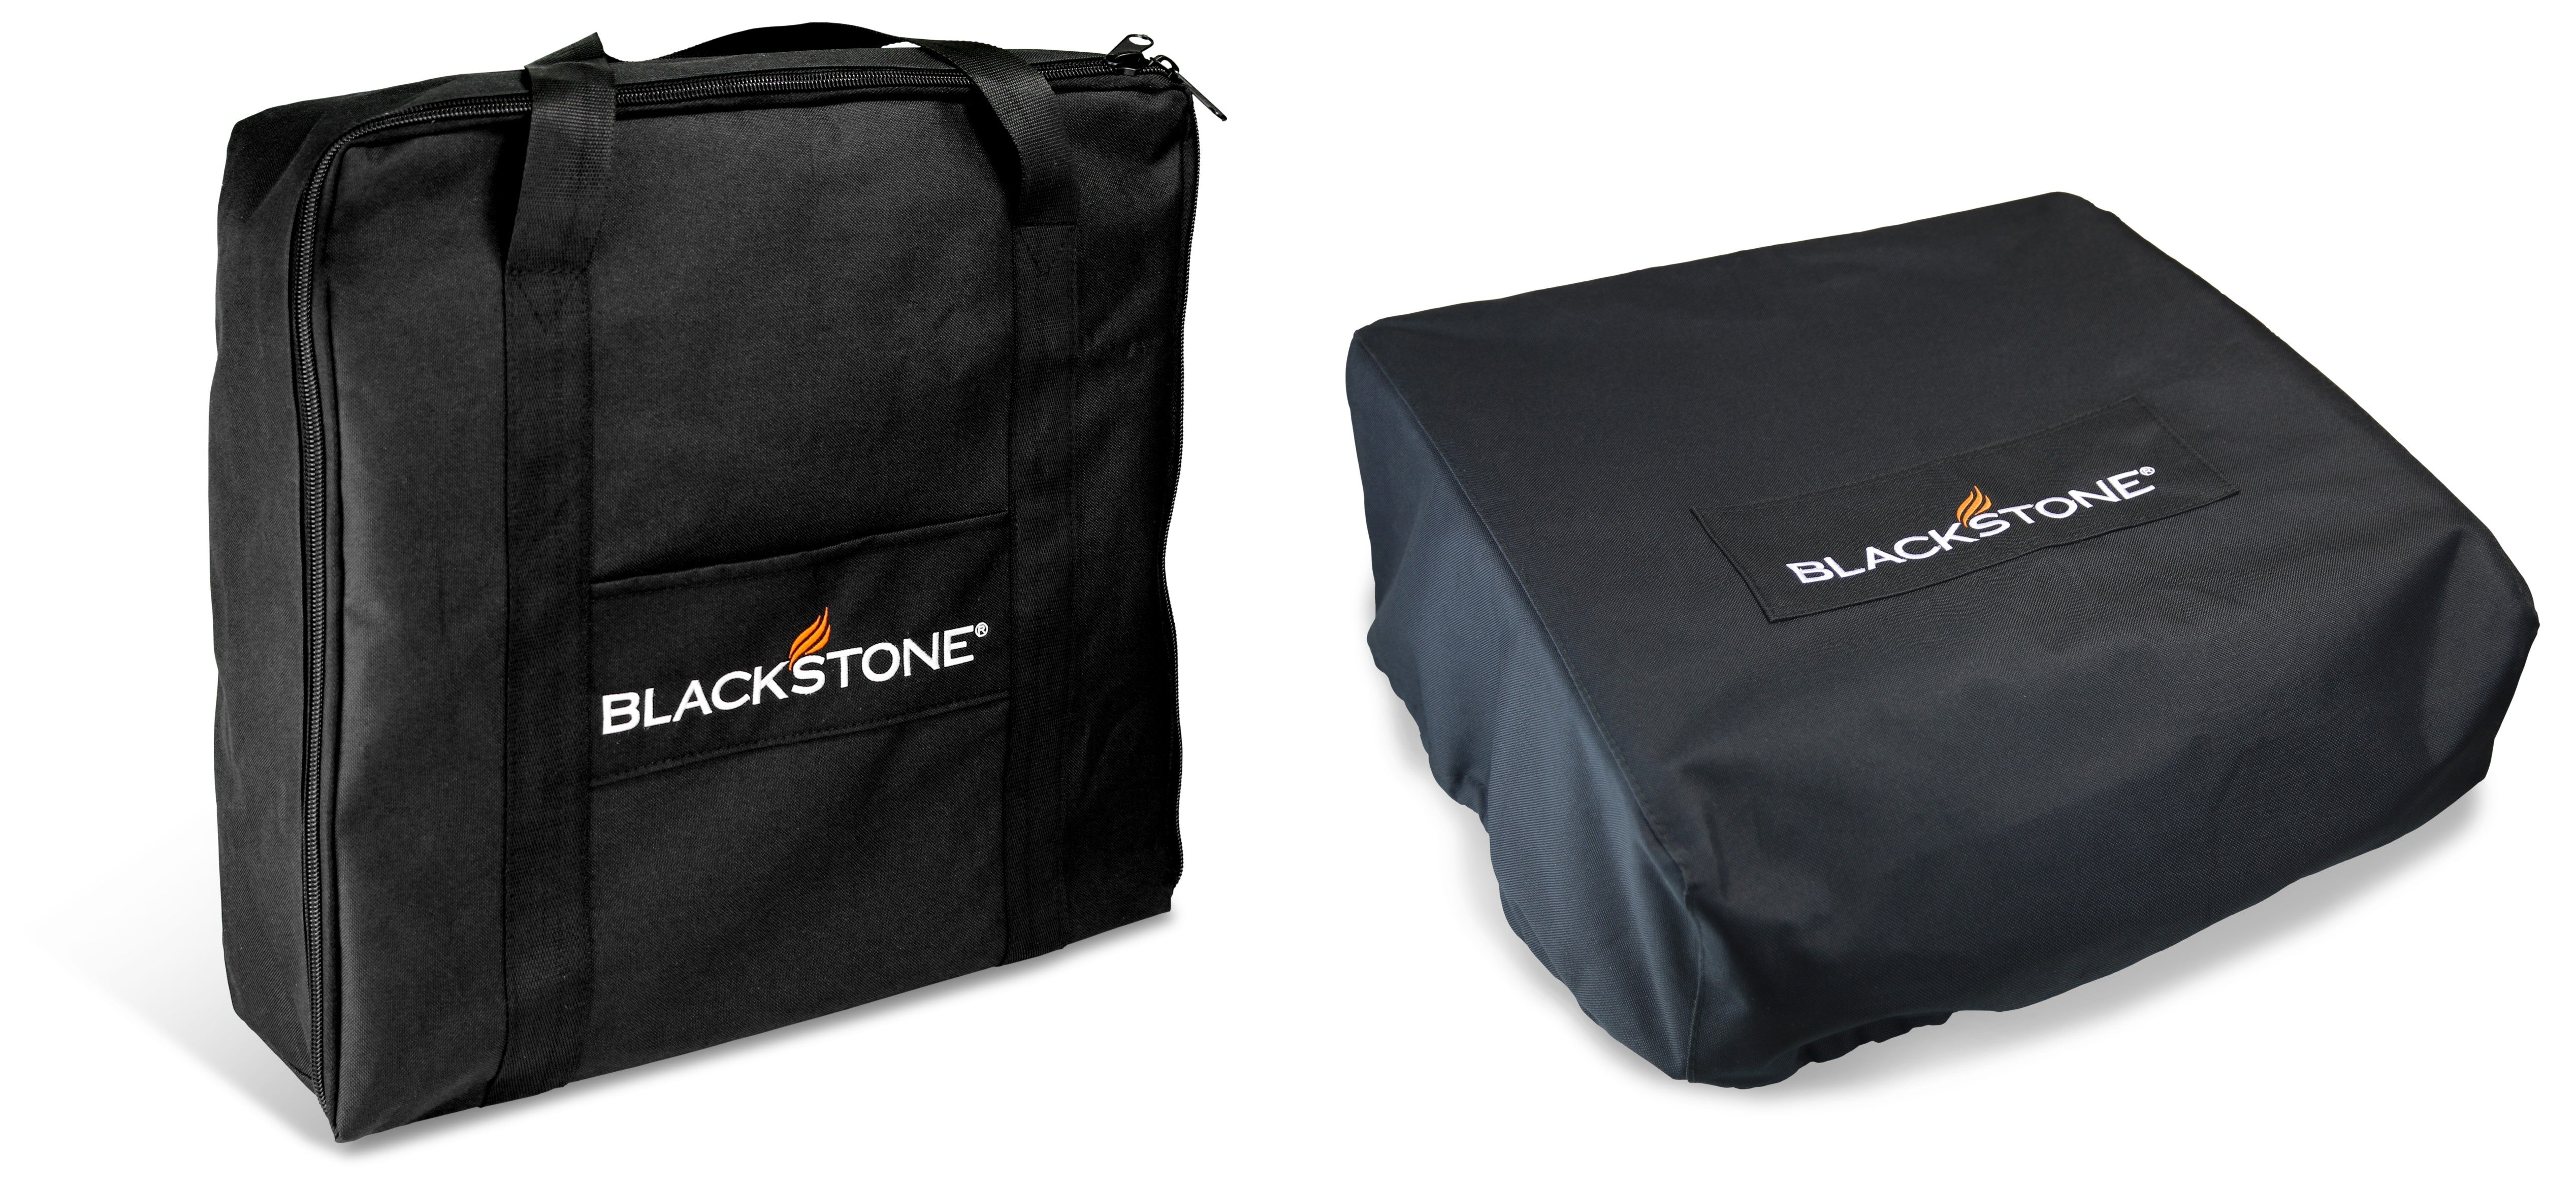 Blackstone 17" Tabletop Griddle Carry Bag - 1720